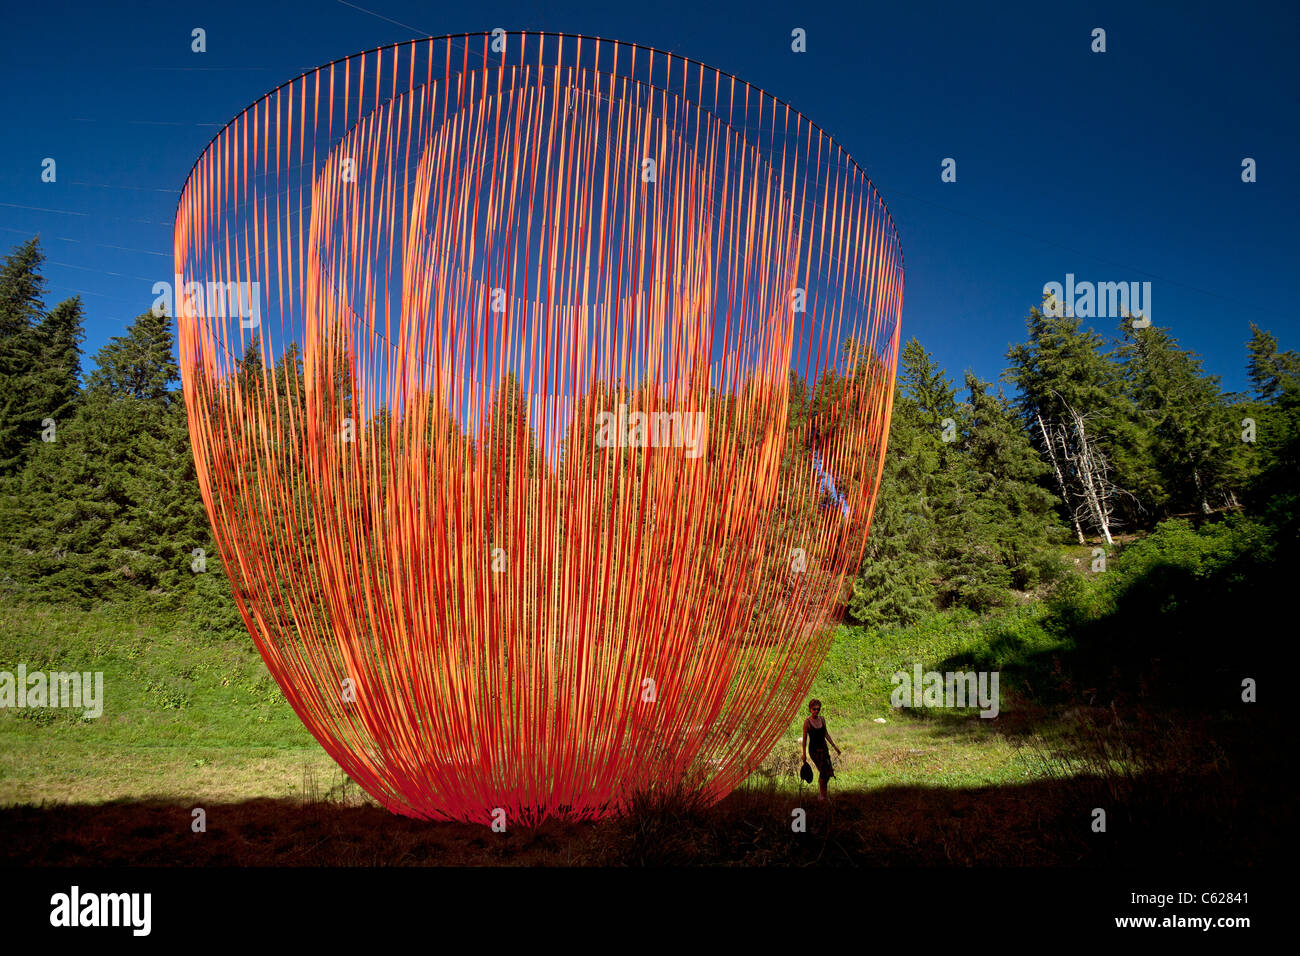 Das Pier Fabre Land Kunstwerk namens "Wakening". Riese ausgesetzt mobile Skulptur mit orangefarbenen Bändern. Stockfoto